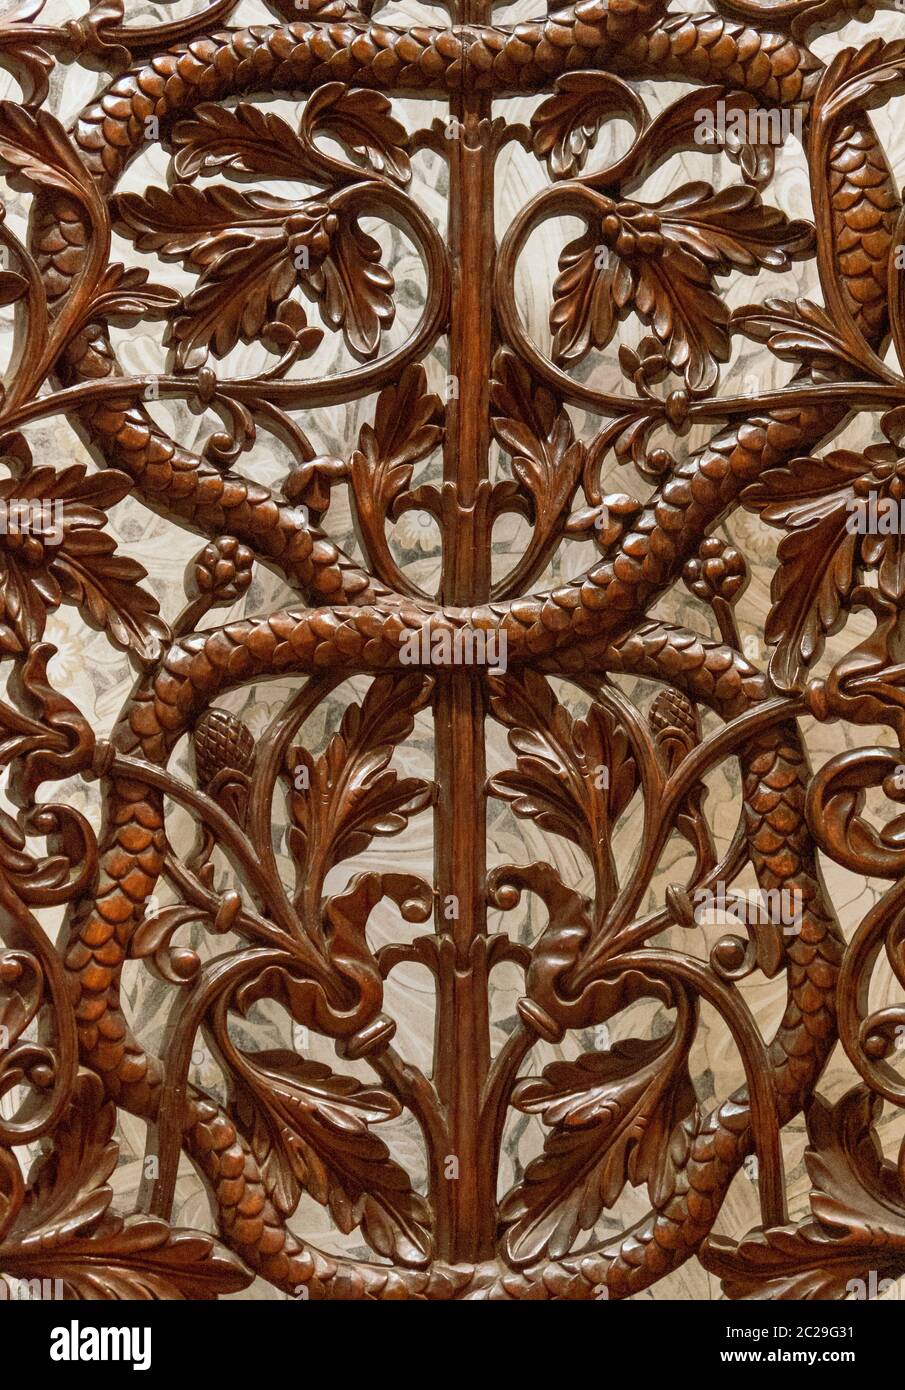 Detalles de un arte de talla de madera fina. Arte y artesanía islámica Foto de stock